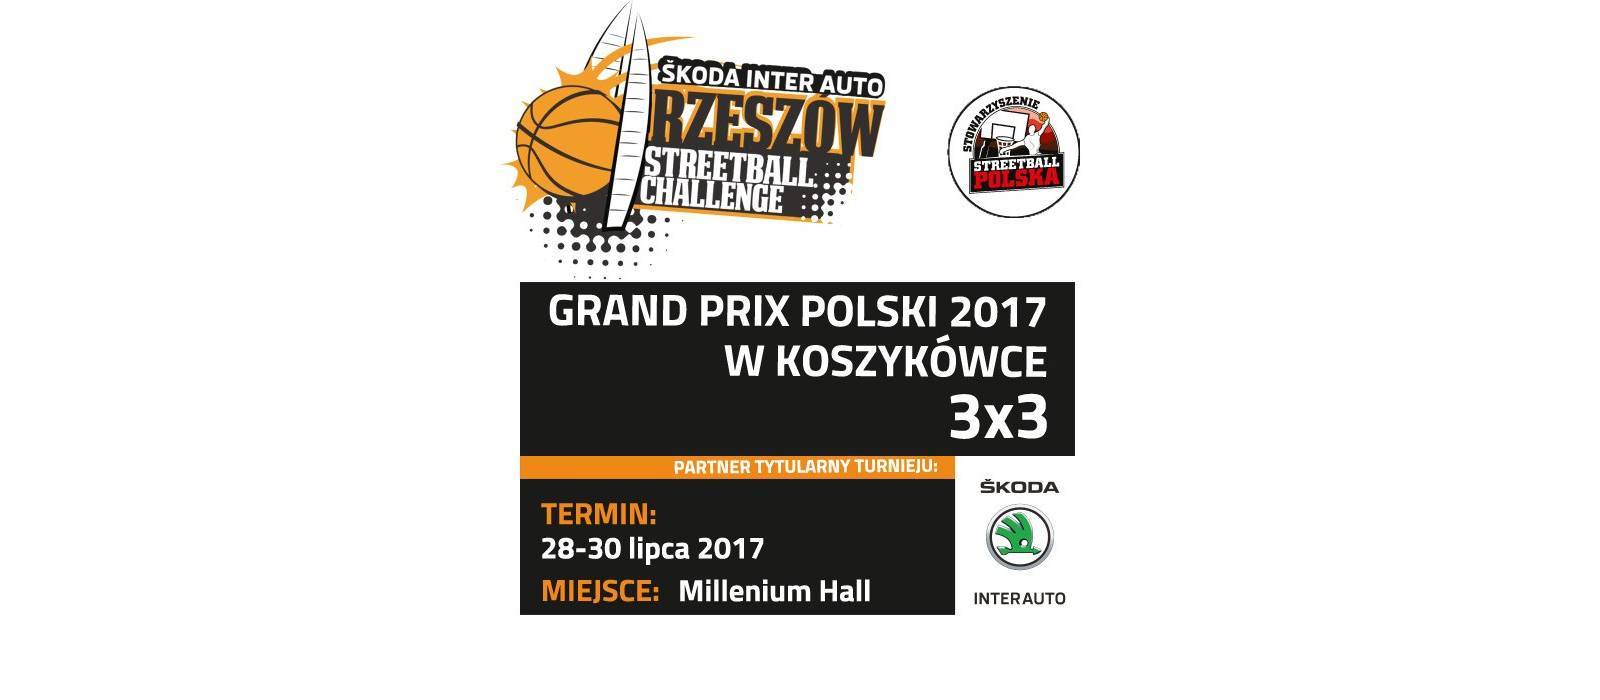 Skoda InterAuto Rzeszów Streetball Challenge - 1